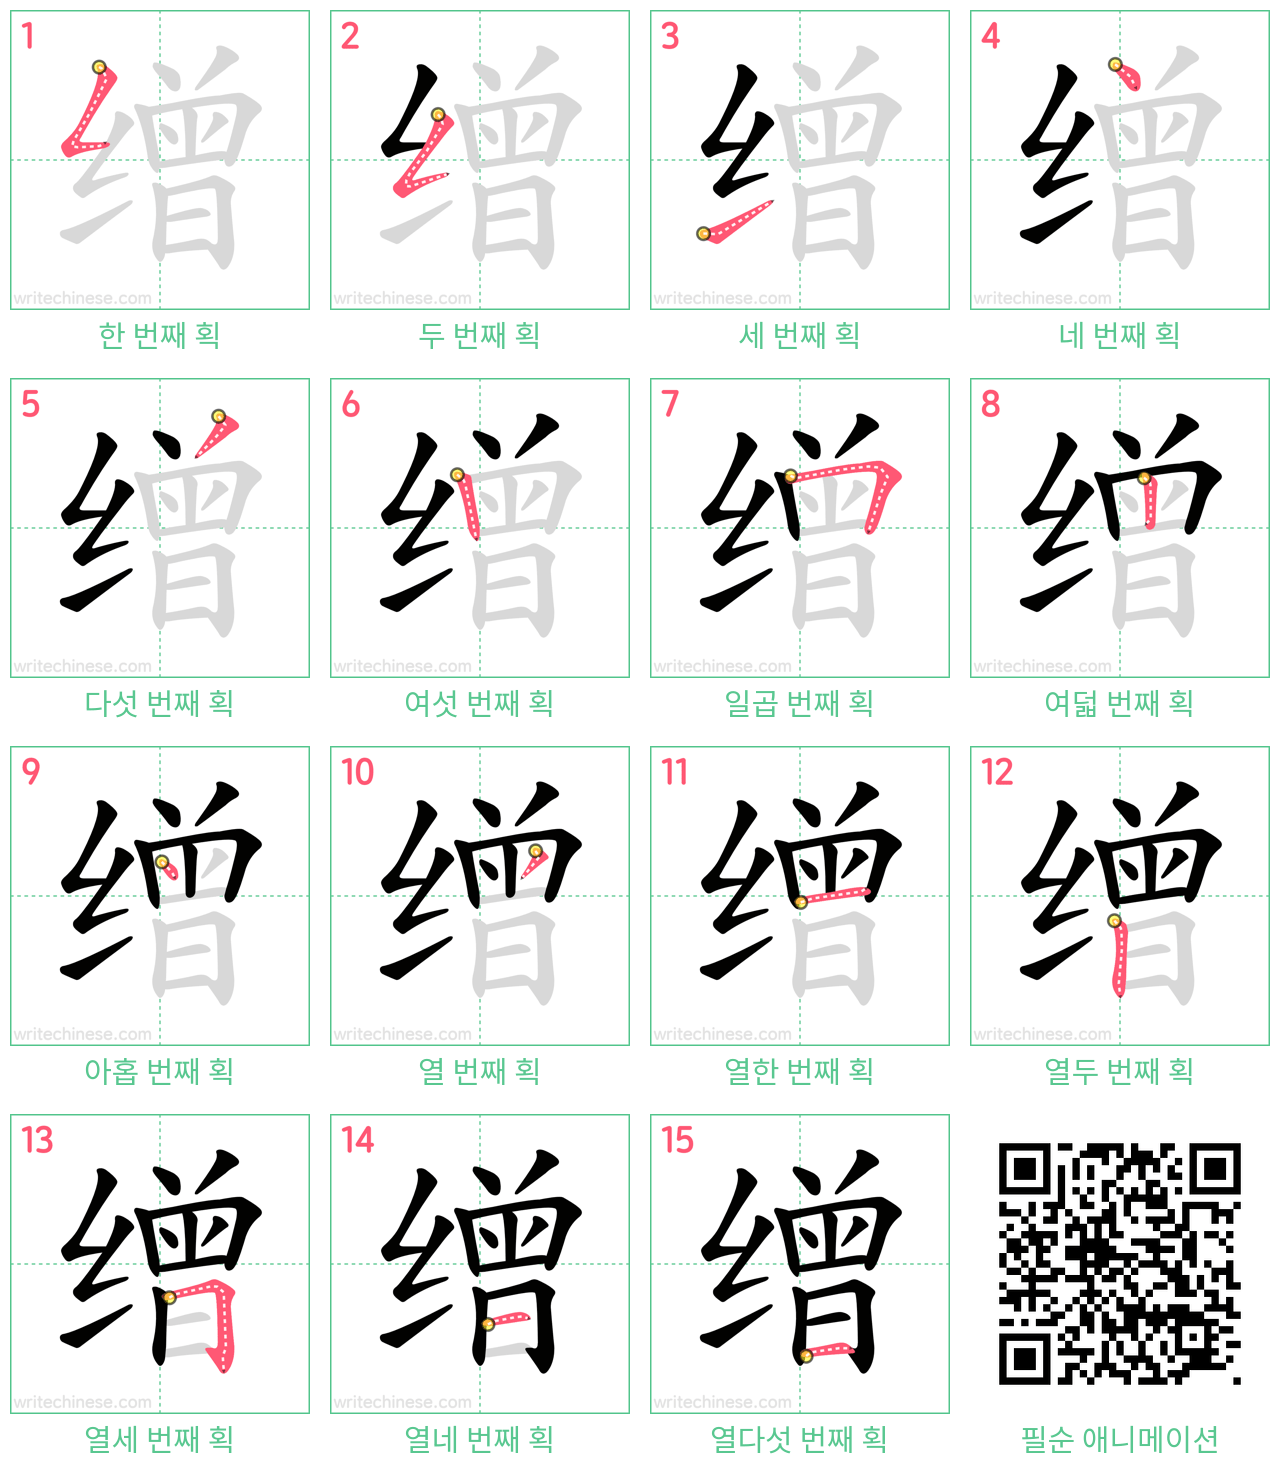 缯 step-by-step stroke order diagrams